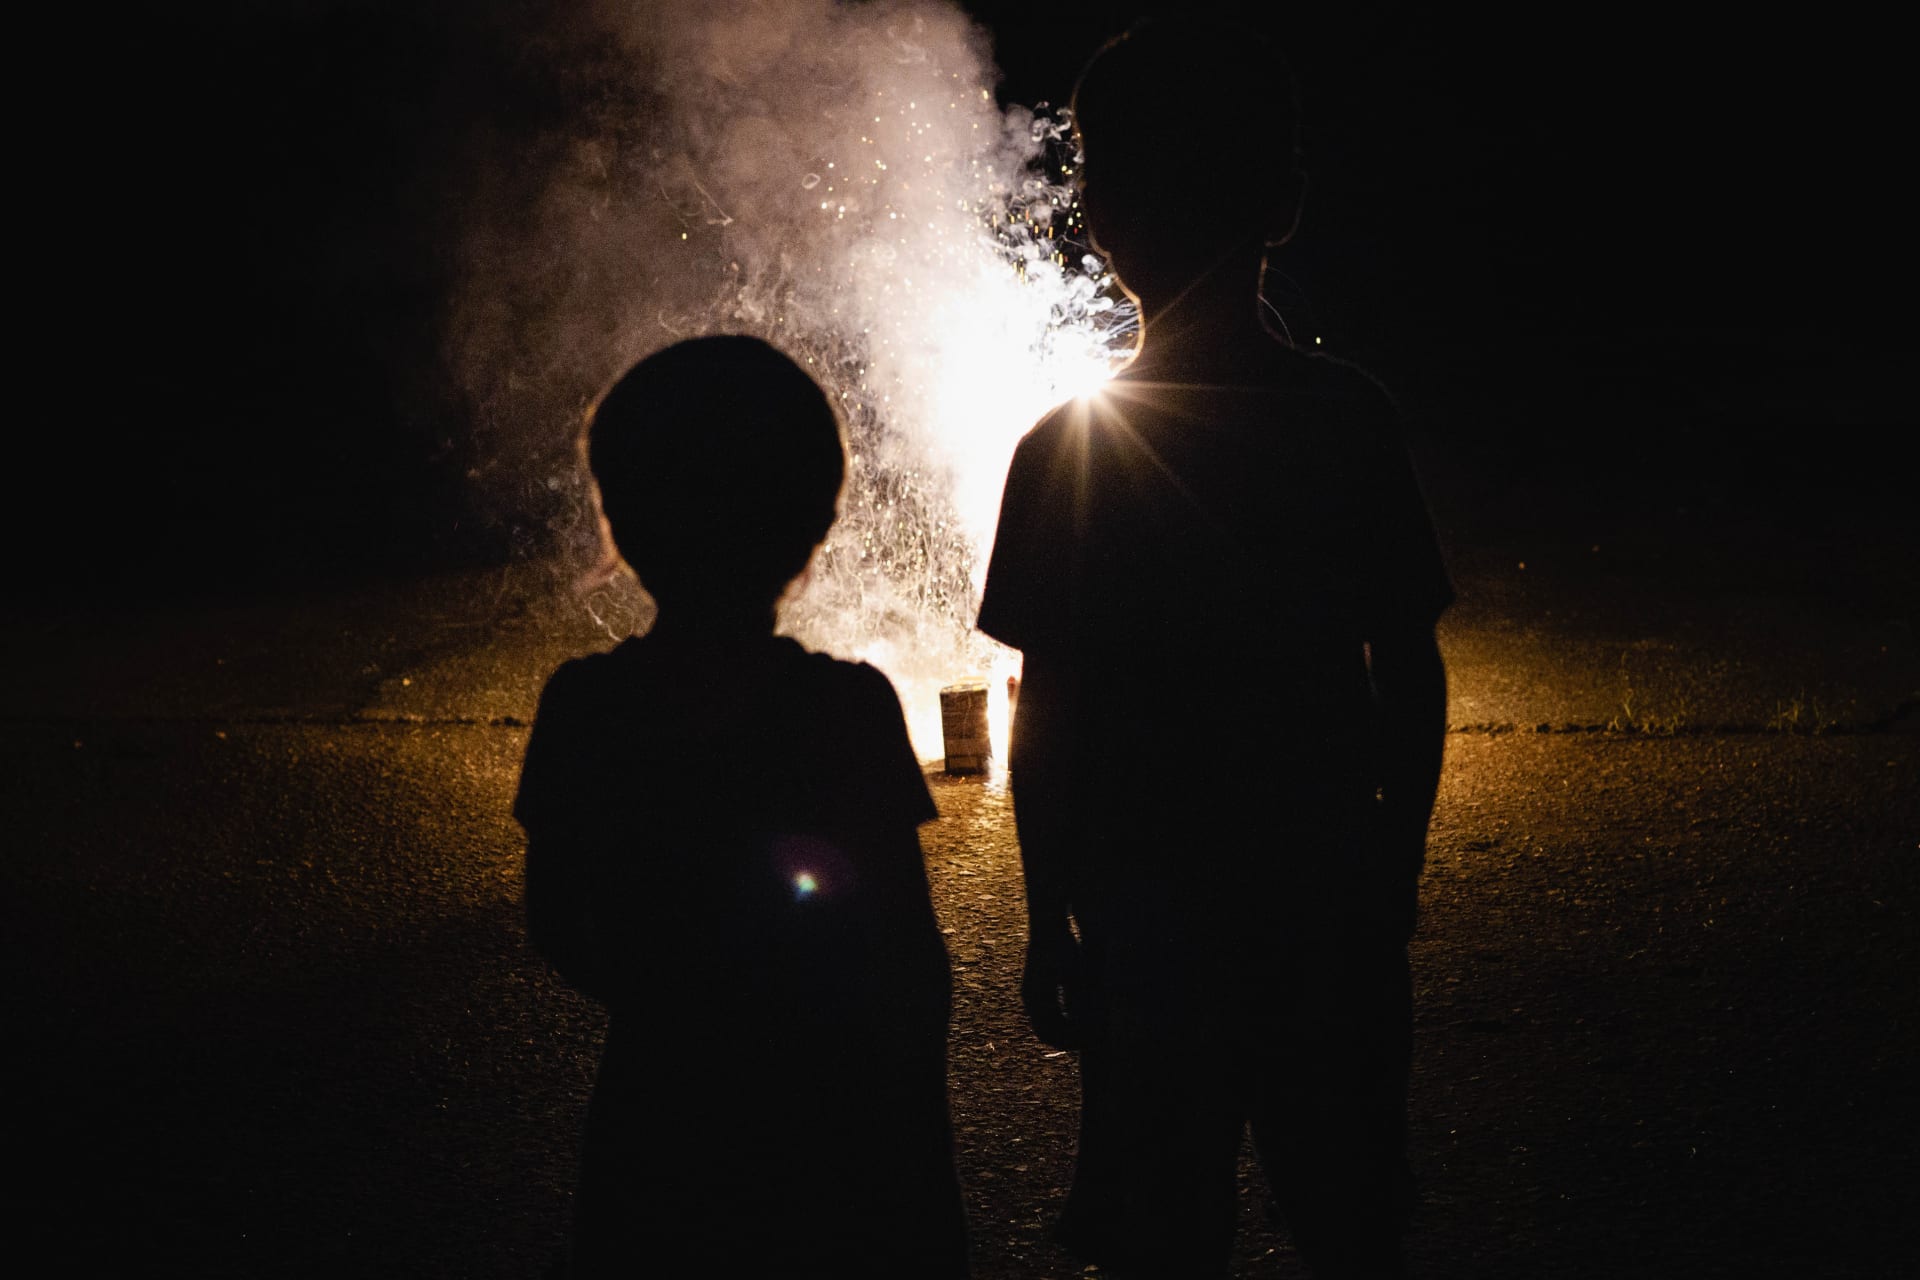 Děti podle prvních informací měly sledovat zapalování zábavní pyrotechniky. (ilustrační snímek)